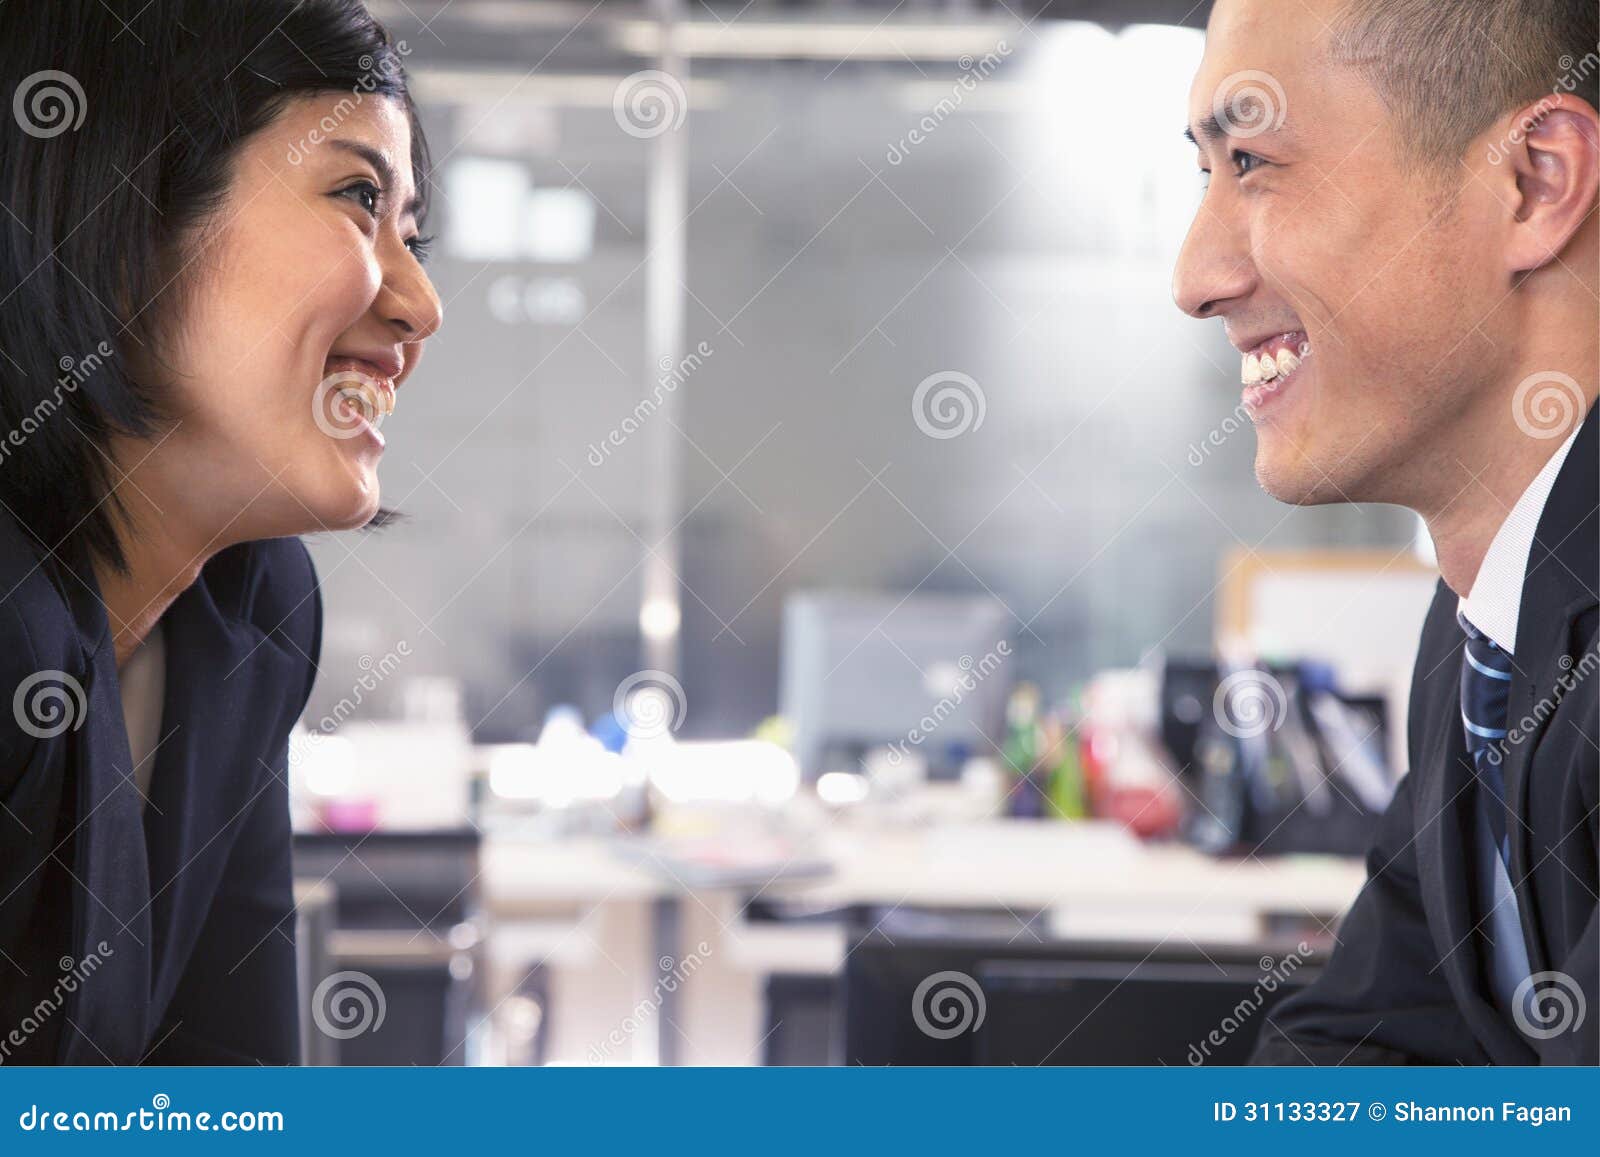 異性戀夫婦的肖像 面對面 微笑圖片素材-JPG圖片尺寸5760 × 3840px-高清圖案501504331-zh.lovepik.com